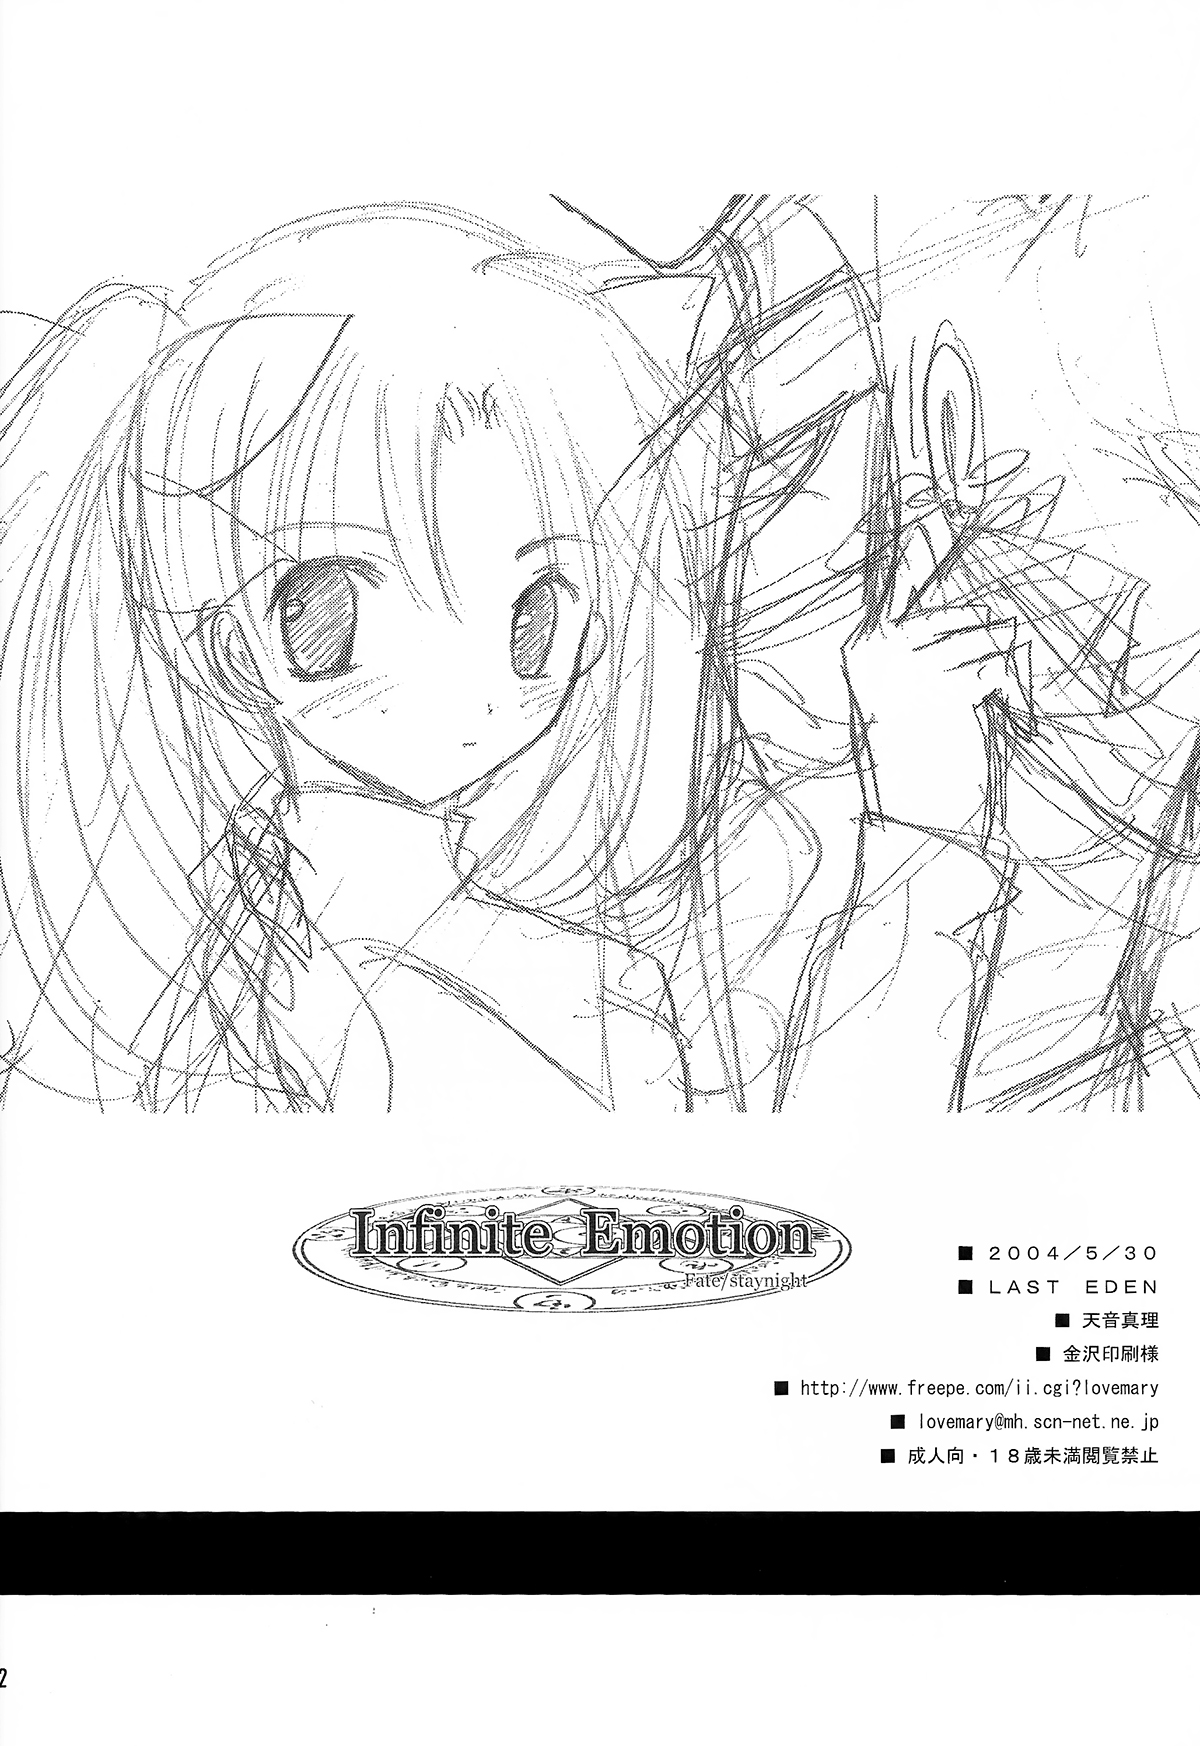 (みみけっと10) [LAST EDEN (天音真理)] Infinite Emotion (Fate/stay night)